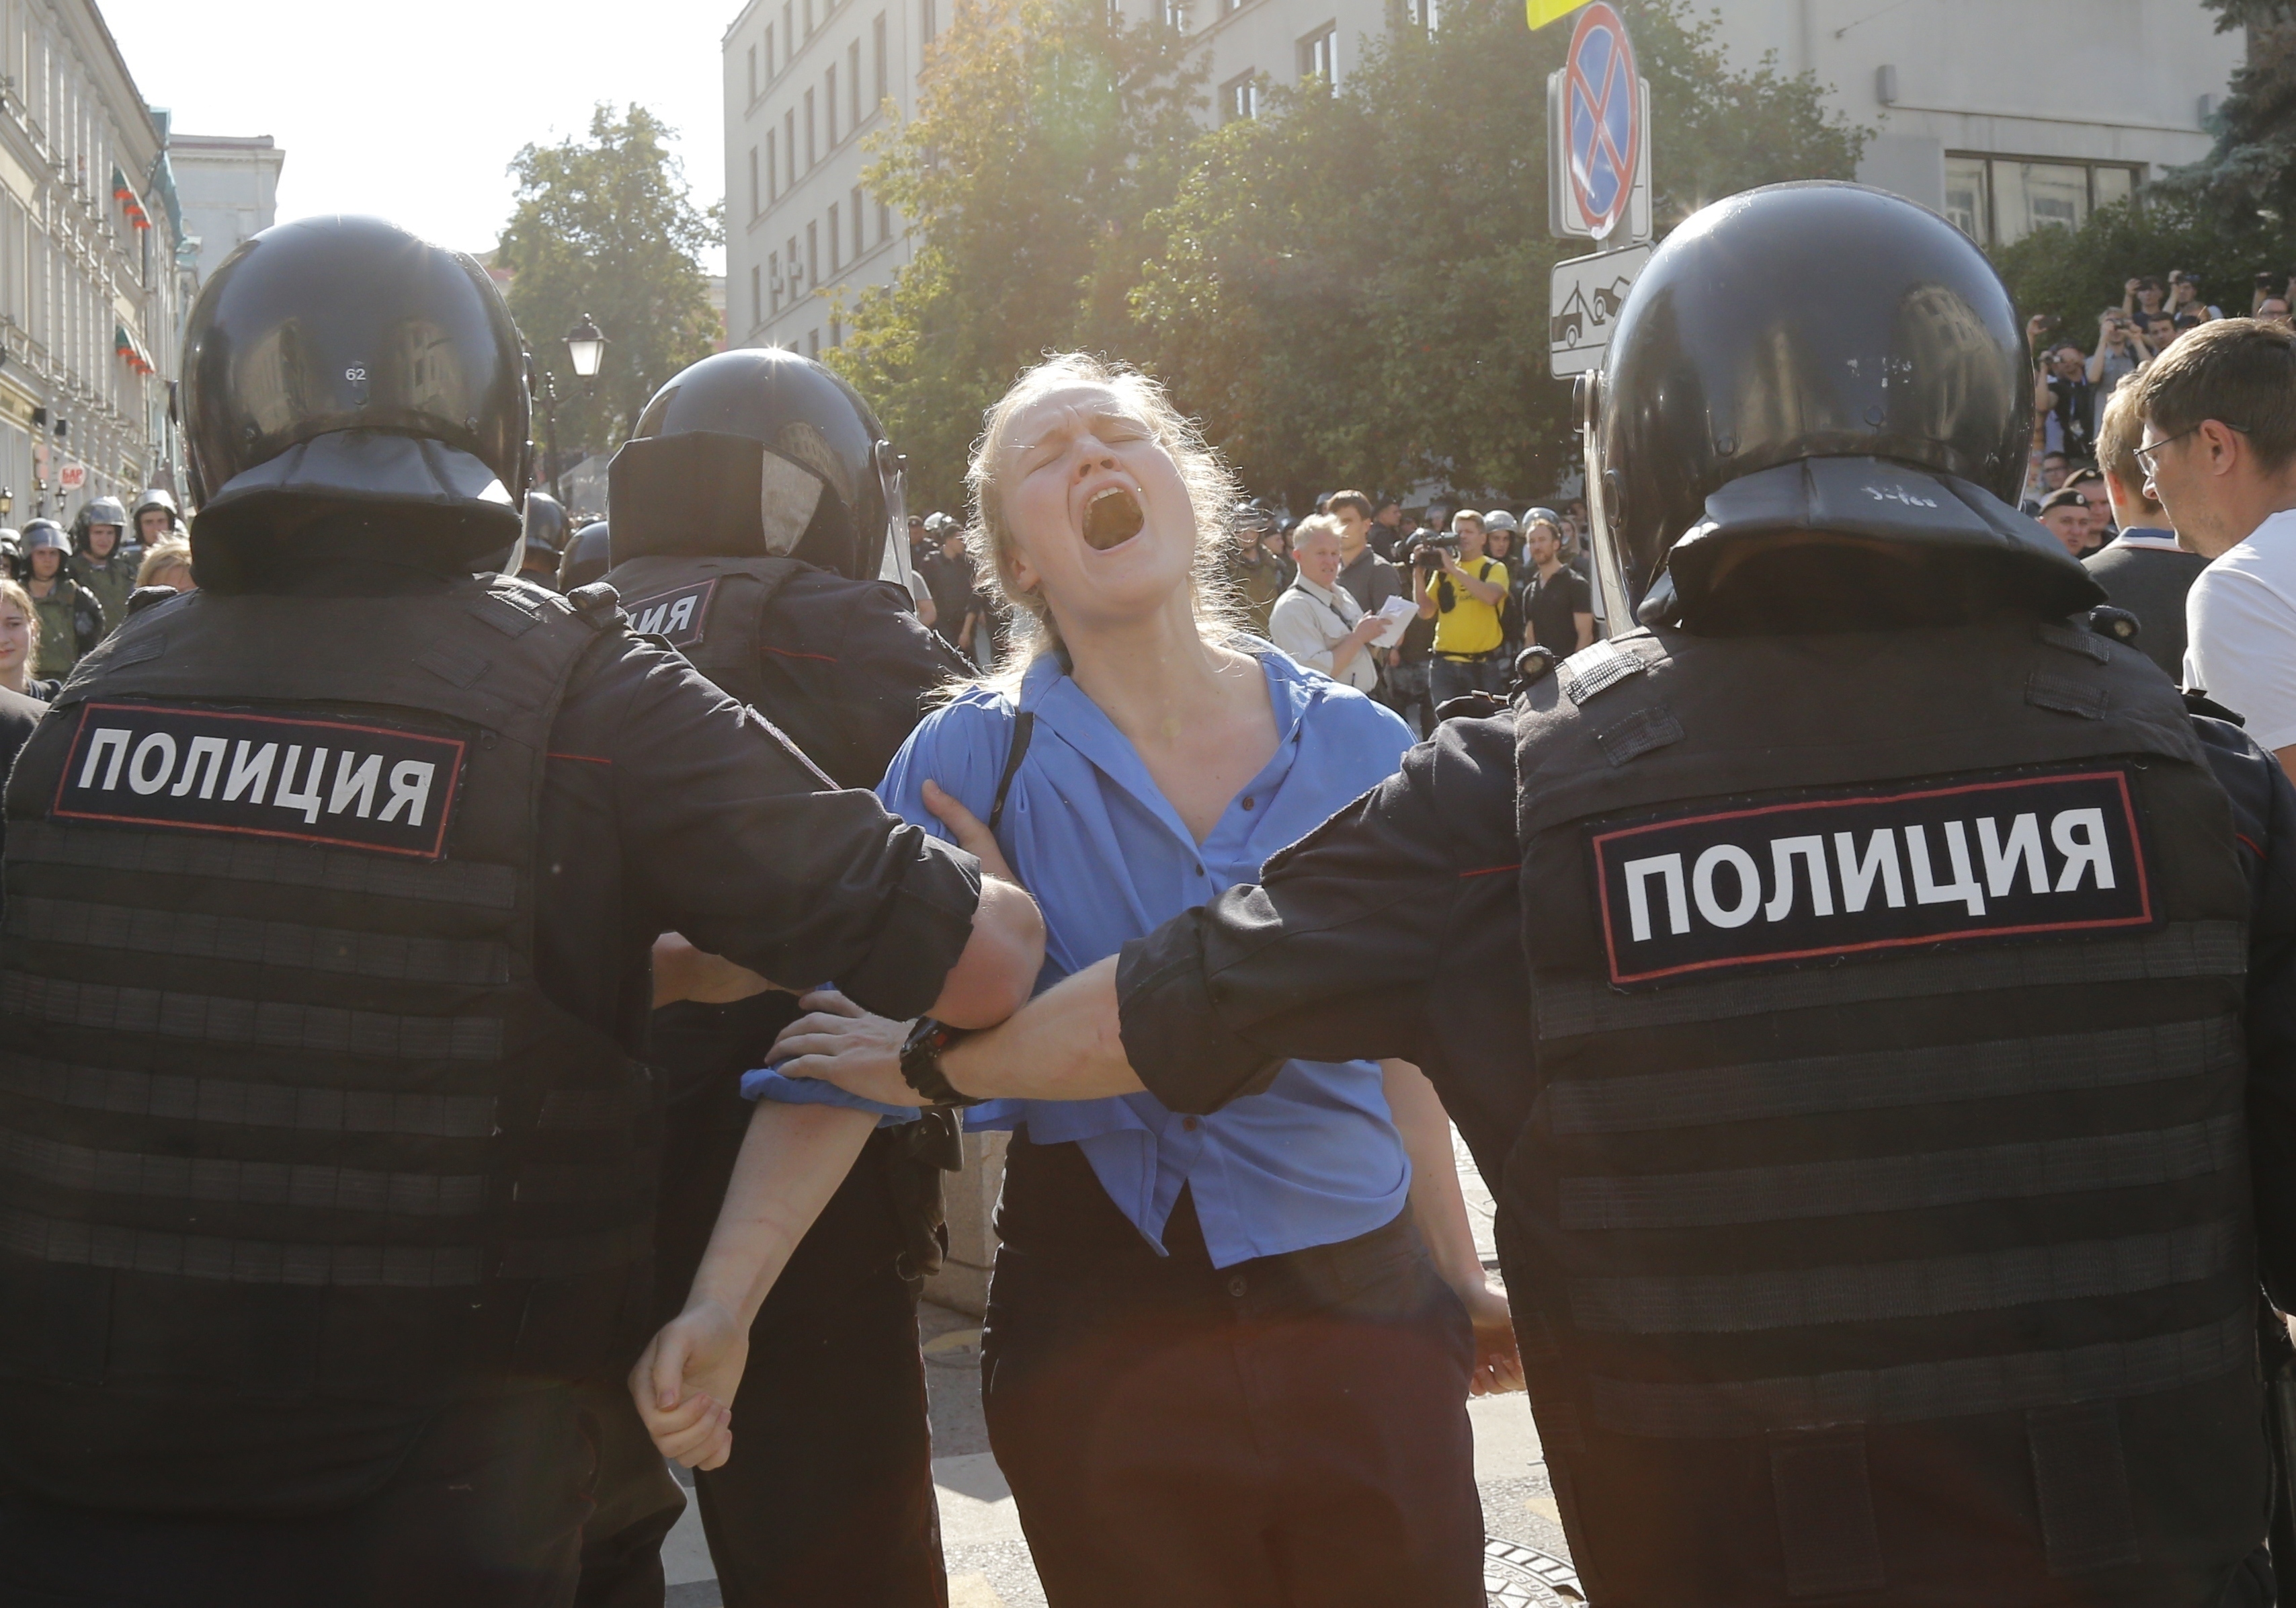 Policías detienen a una mujer durante una marcha no autorizada en el centro de Moscú, Rusia. /Foto: AP